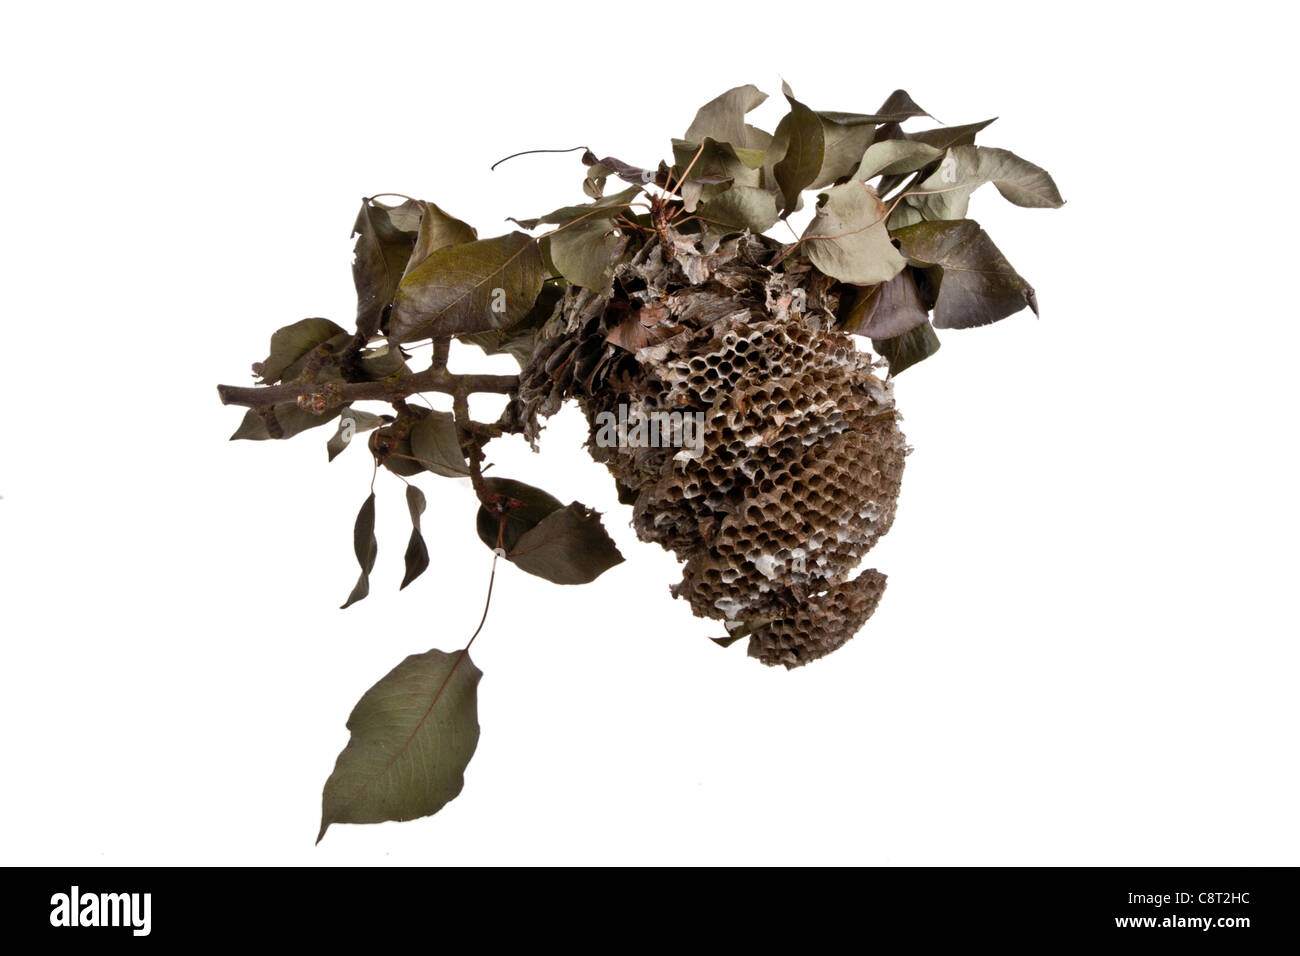 Sezione trasversale di un nido di vespe Foto Stock